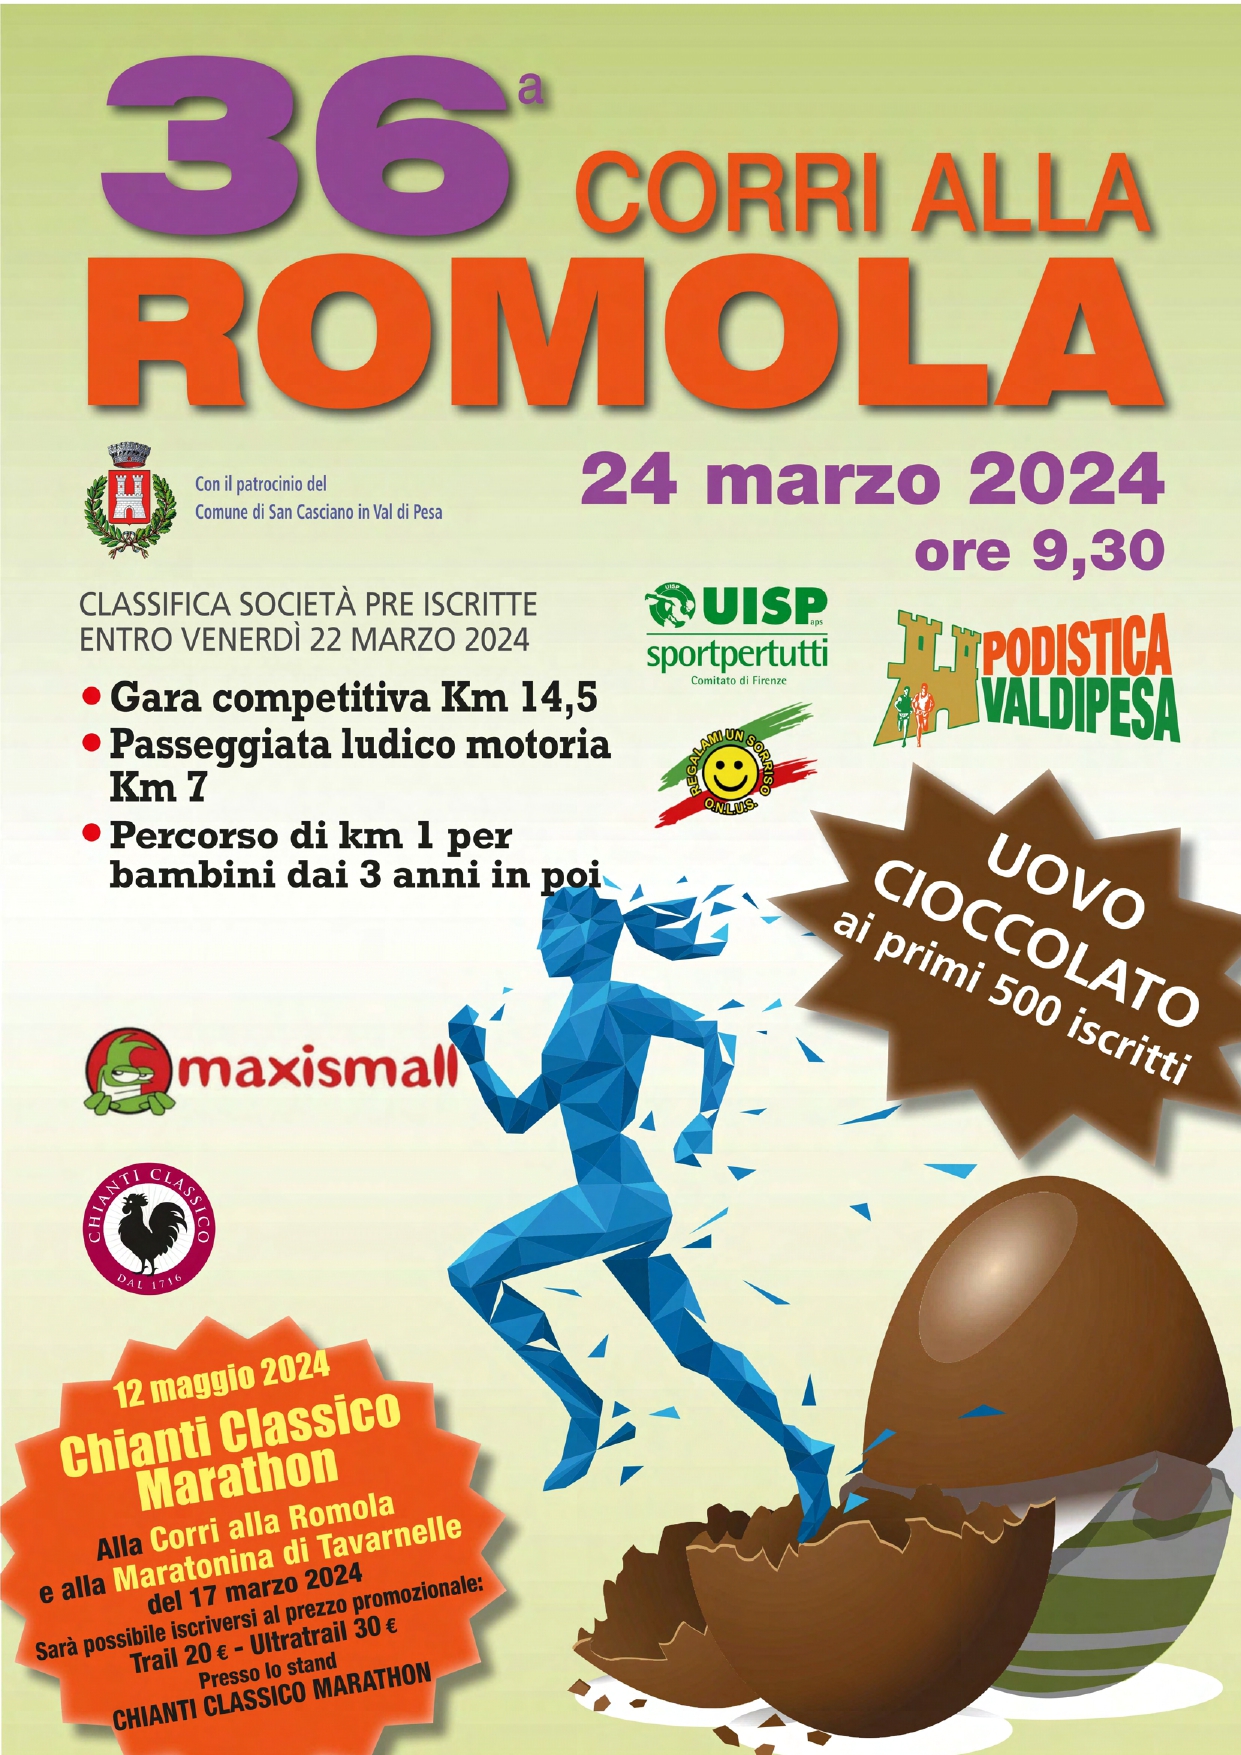 Maratonina di Tavarnelle e Corri alla Romola: iscrizioni con tariffa scontata alla Chianti Classico Marathon